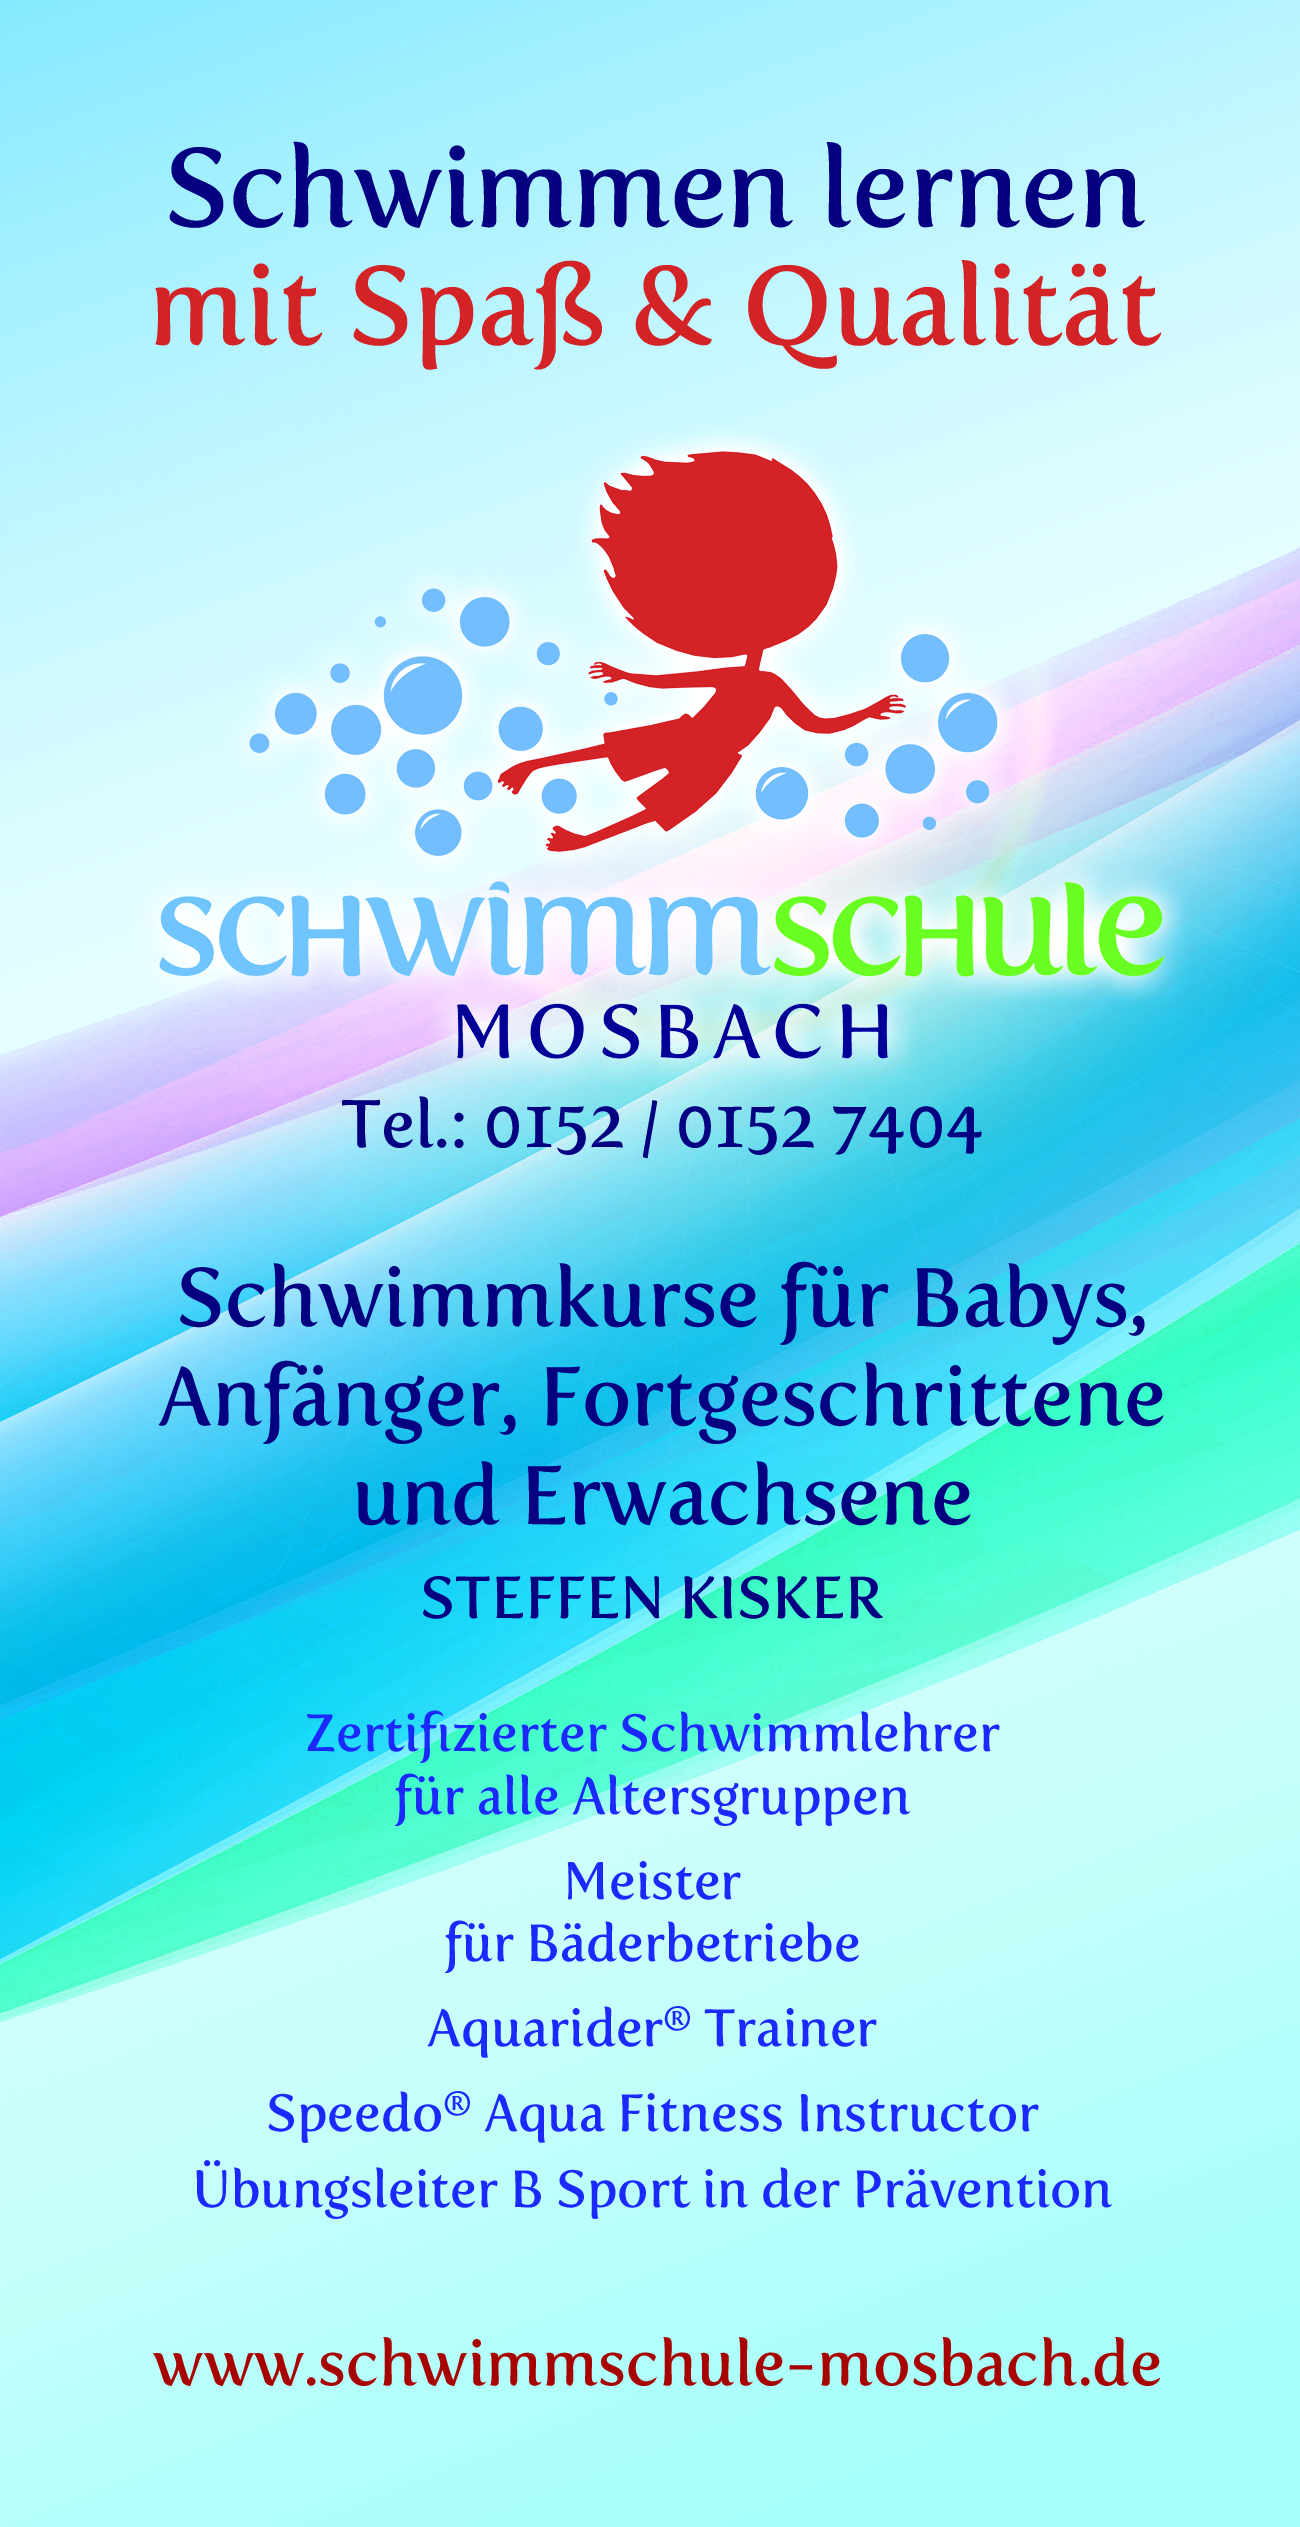 Schwimmschule Mosbach Flyer